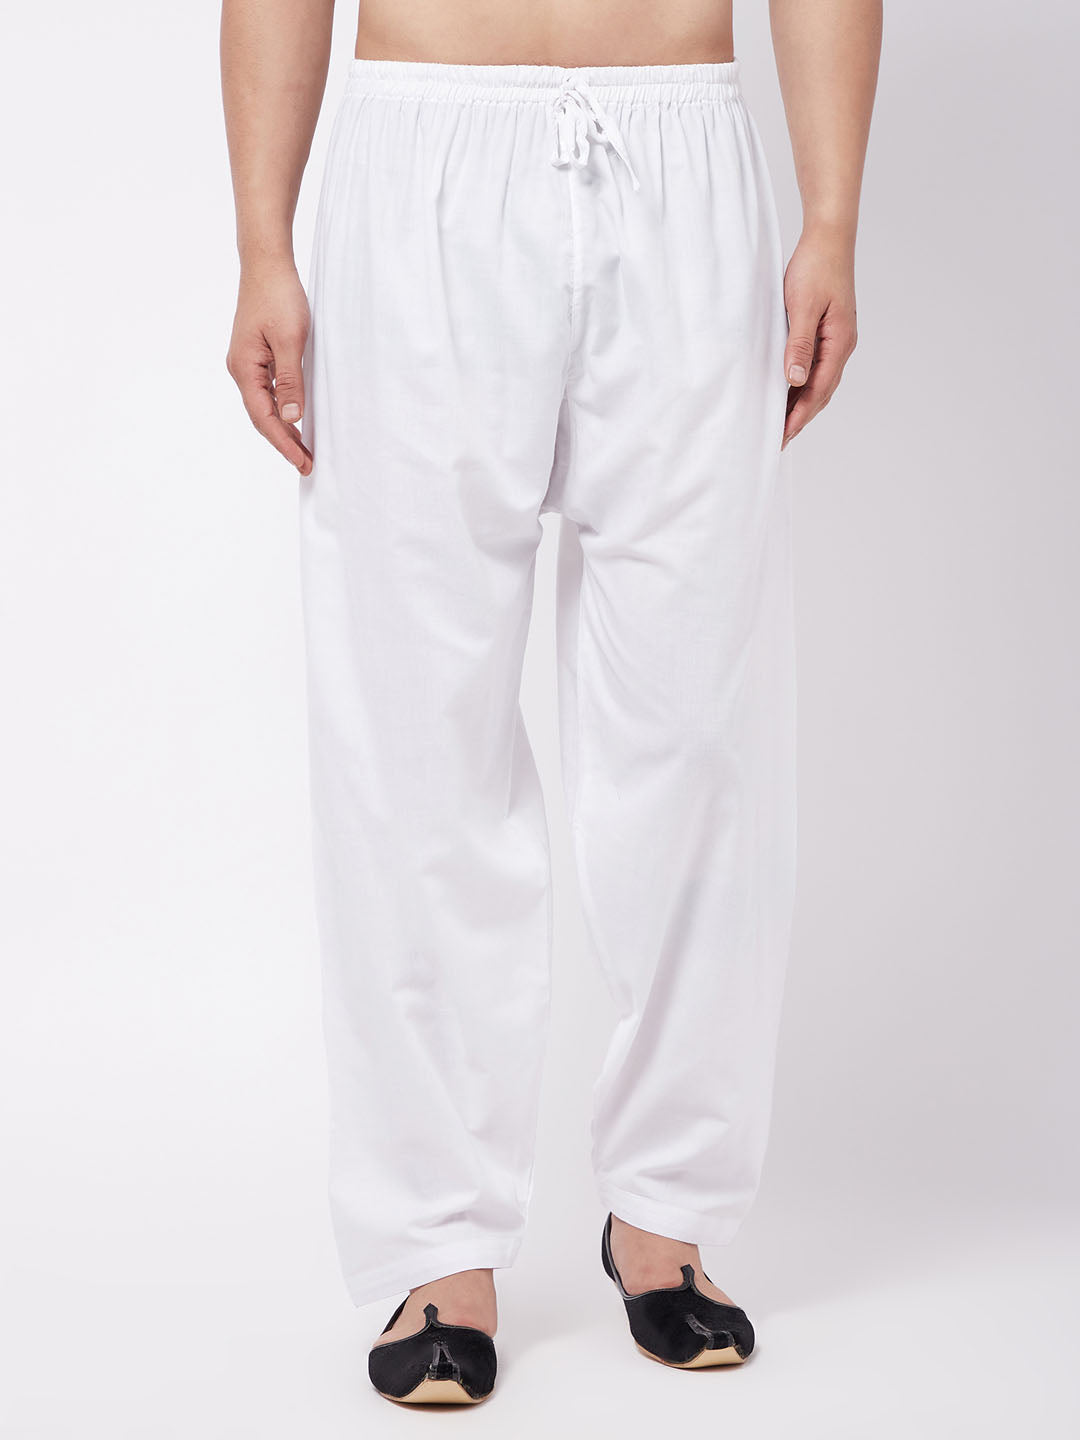 Royal Kurta Men's Loose Fit Cotton Salwar Pants (996/WHITE/COTON/PATIALA/_Black_Free  Size) - Walmart.com